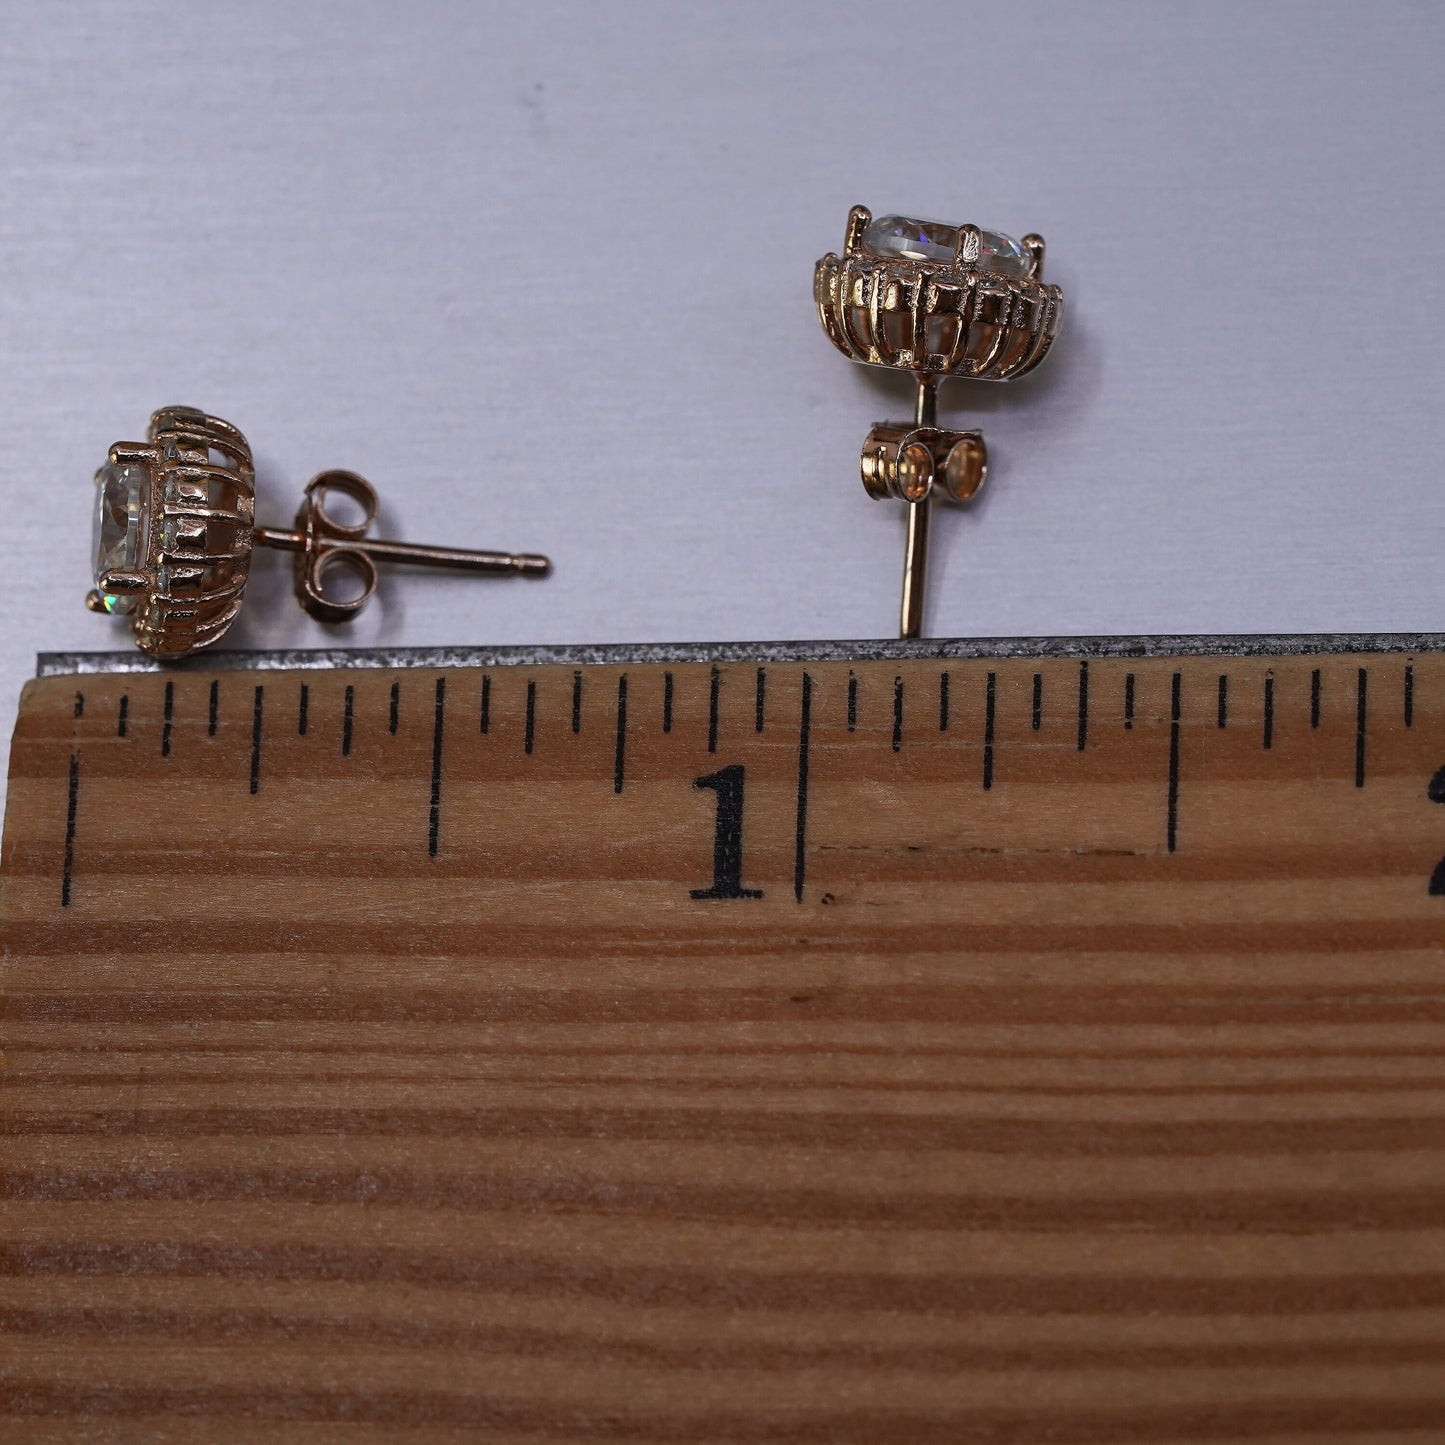 Vintage rose gold over Sterling 925 silver Cz studs, Swarovski earrings